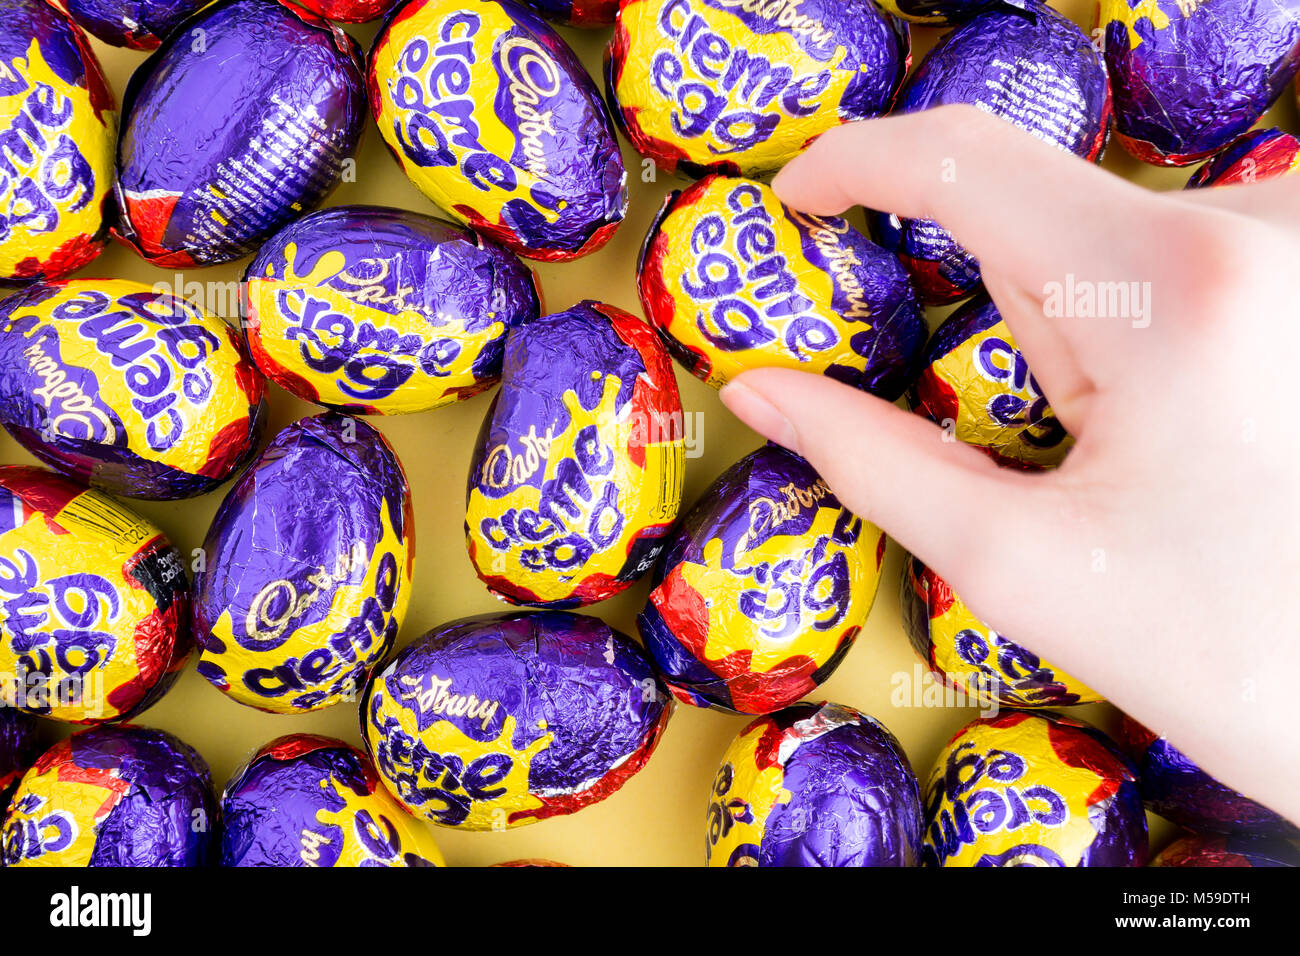 Une main pour atteindre le Cadbury creme egg Banque D'Images